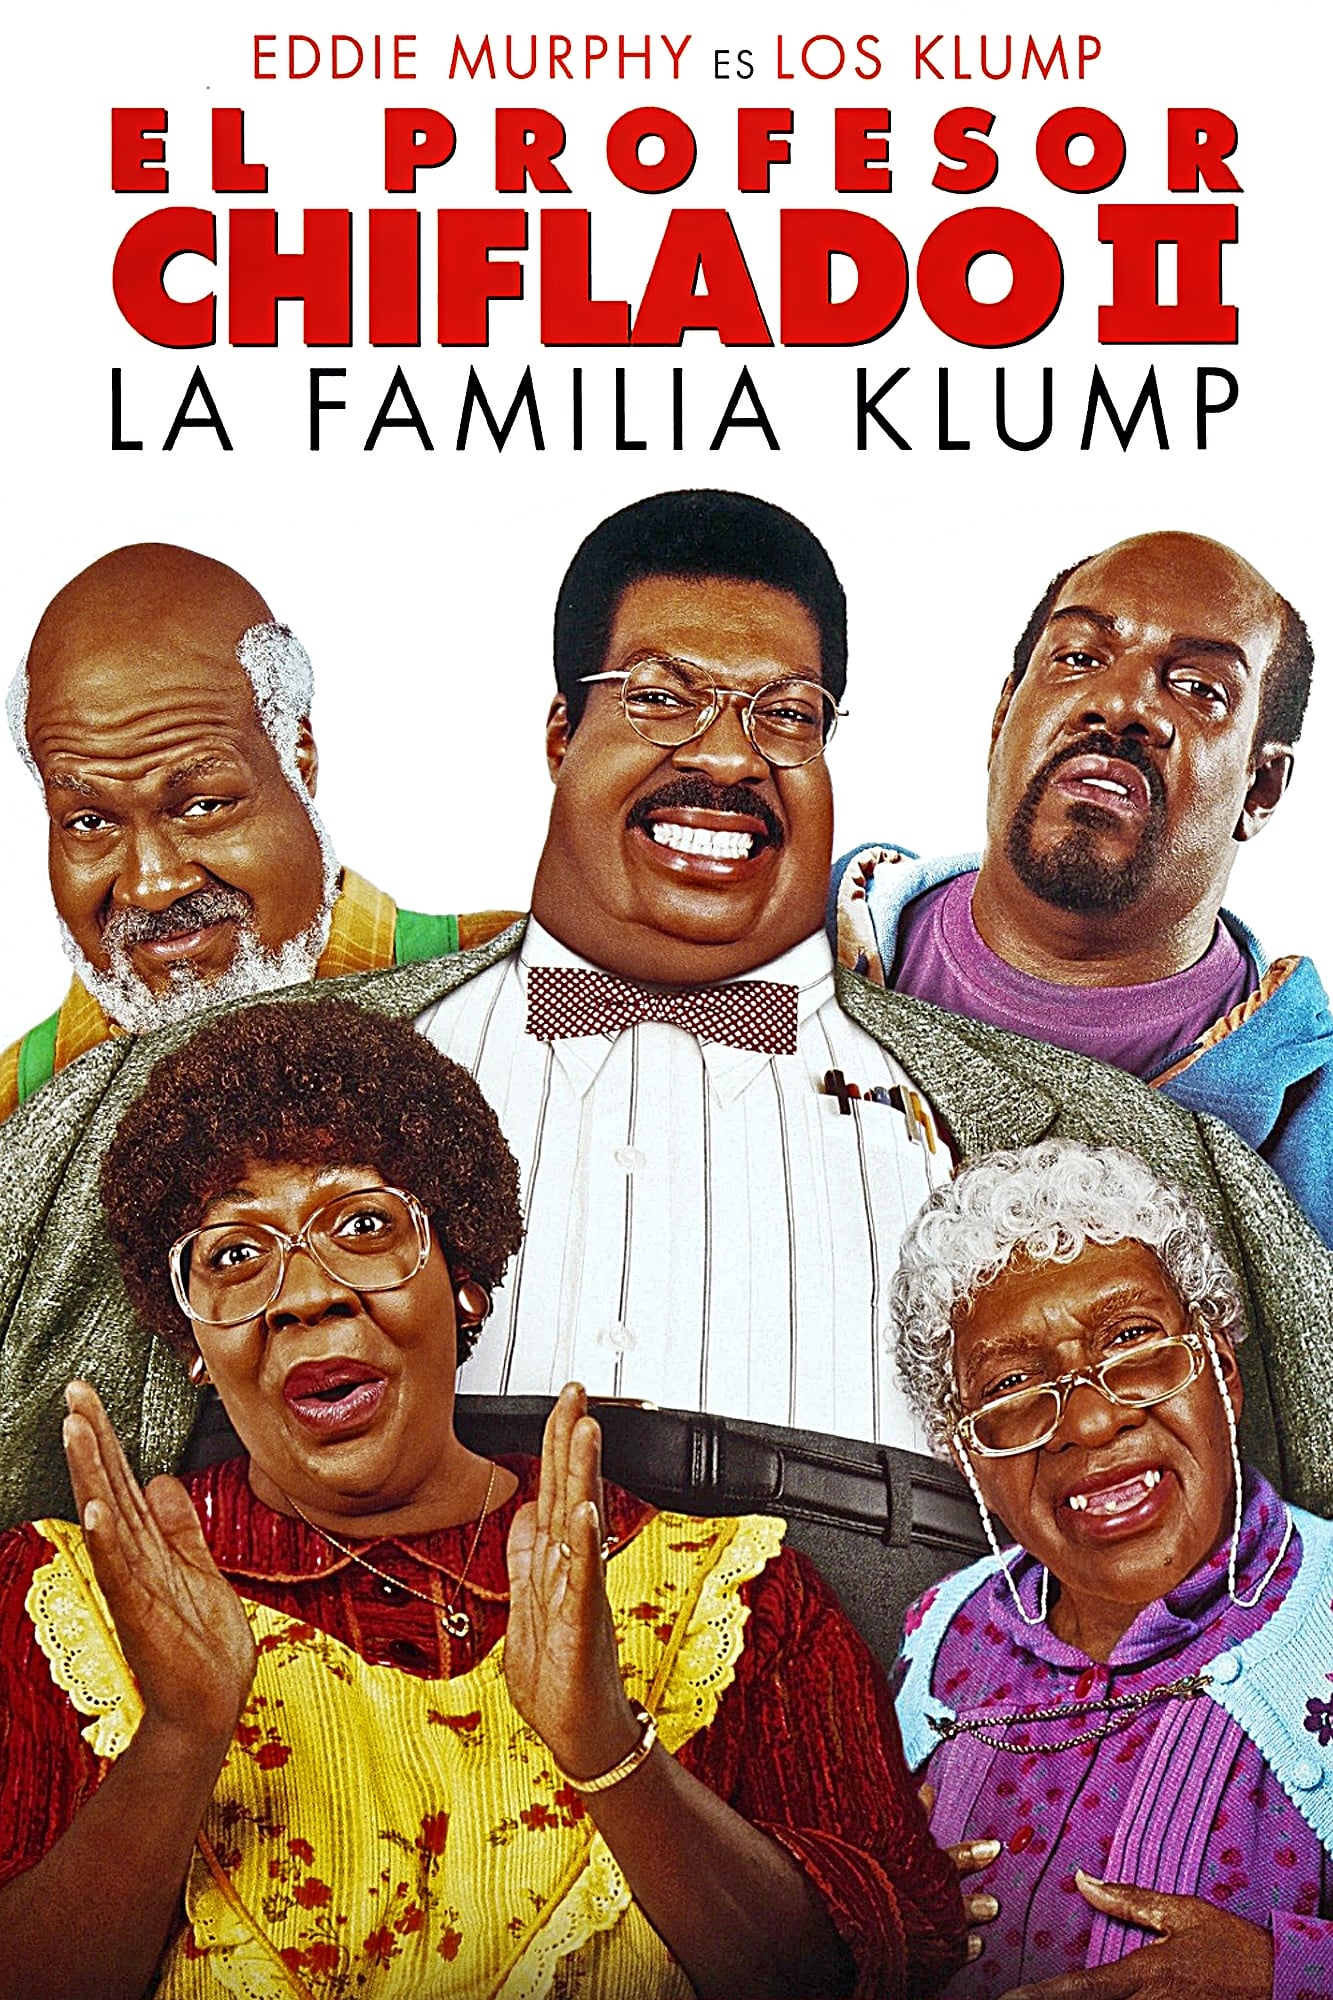 El profesor chiflado II: La familia Klump poster